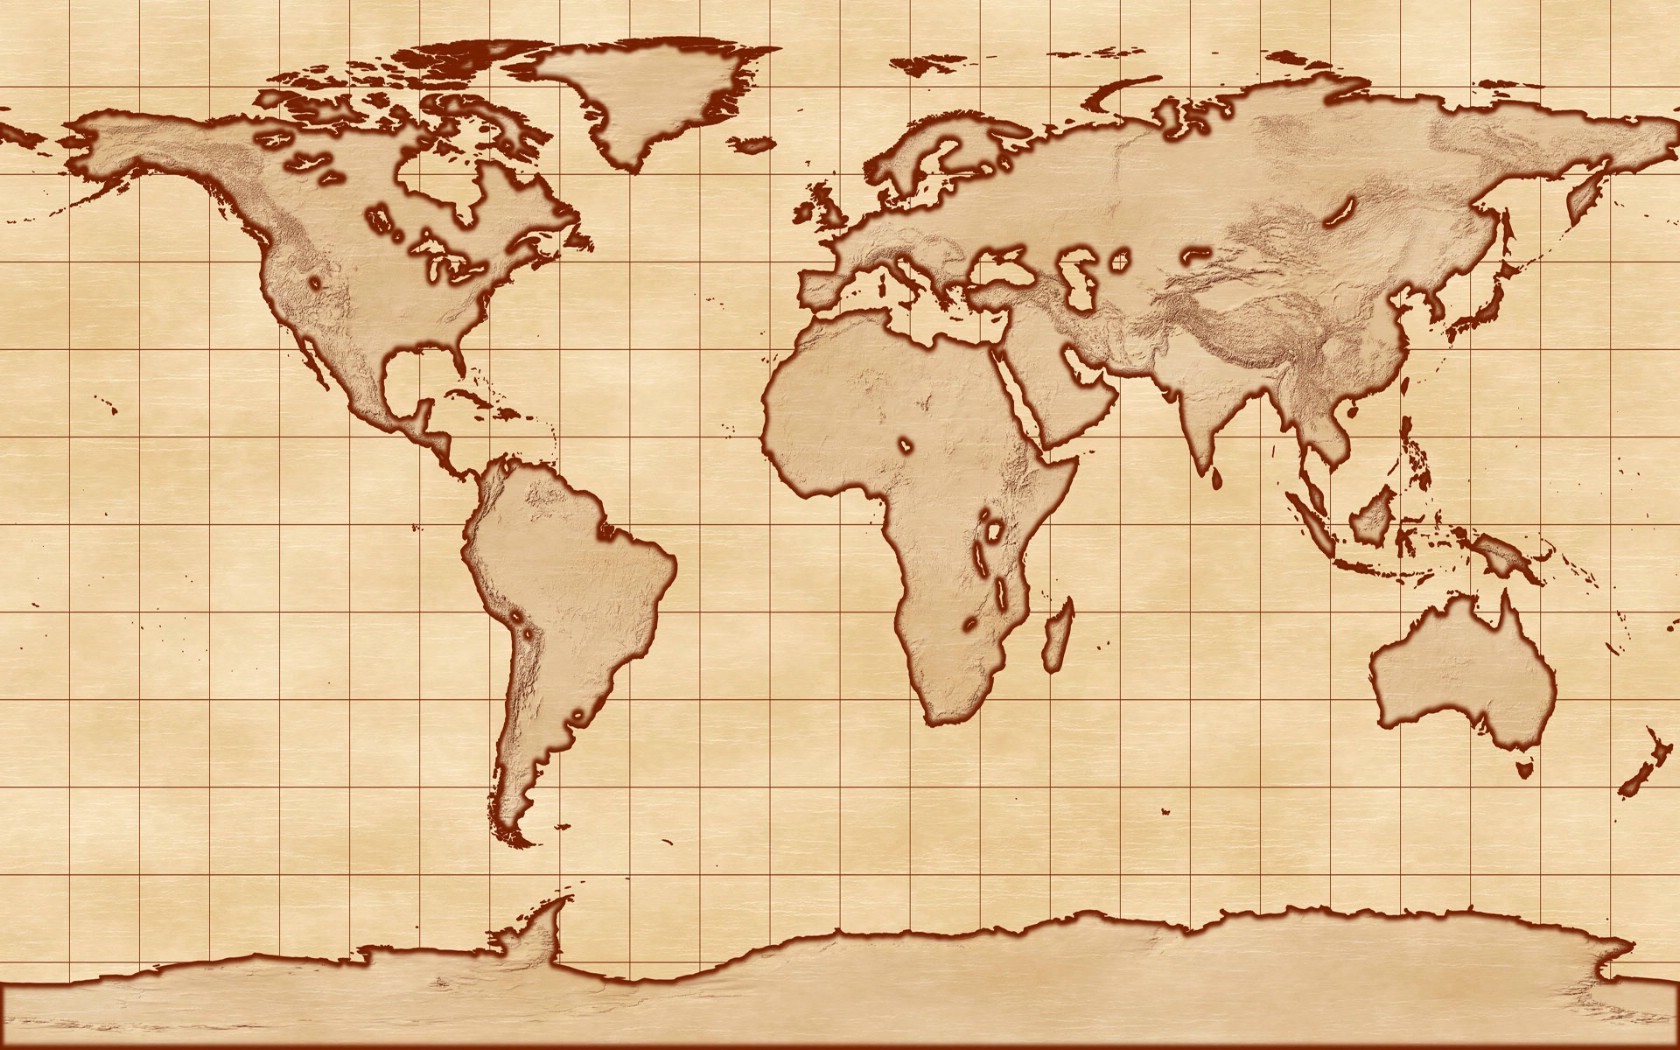 壁纸1680x1050地图 我们的地球壁纸壁纸 地图！我们的地球壁纸壁纸 地图！我们的地球壁纸图片 地图！我们的地球壁纸素材 创意壁纸 创意图库 创意图片素材桌面壁纸